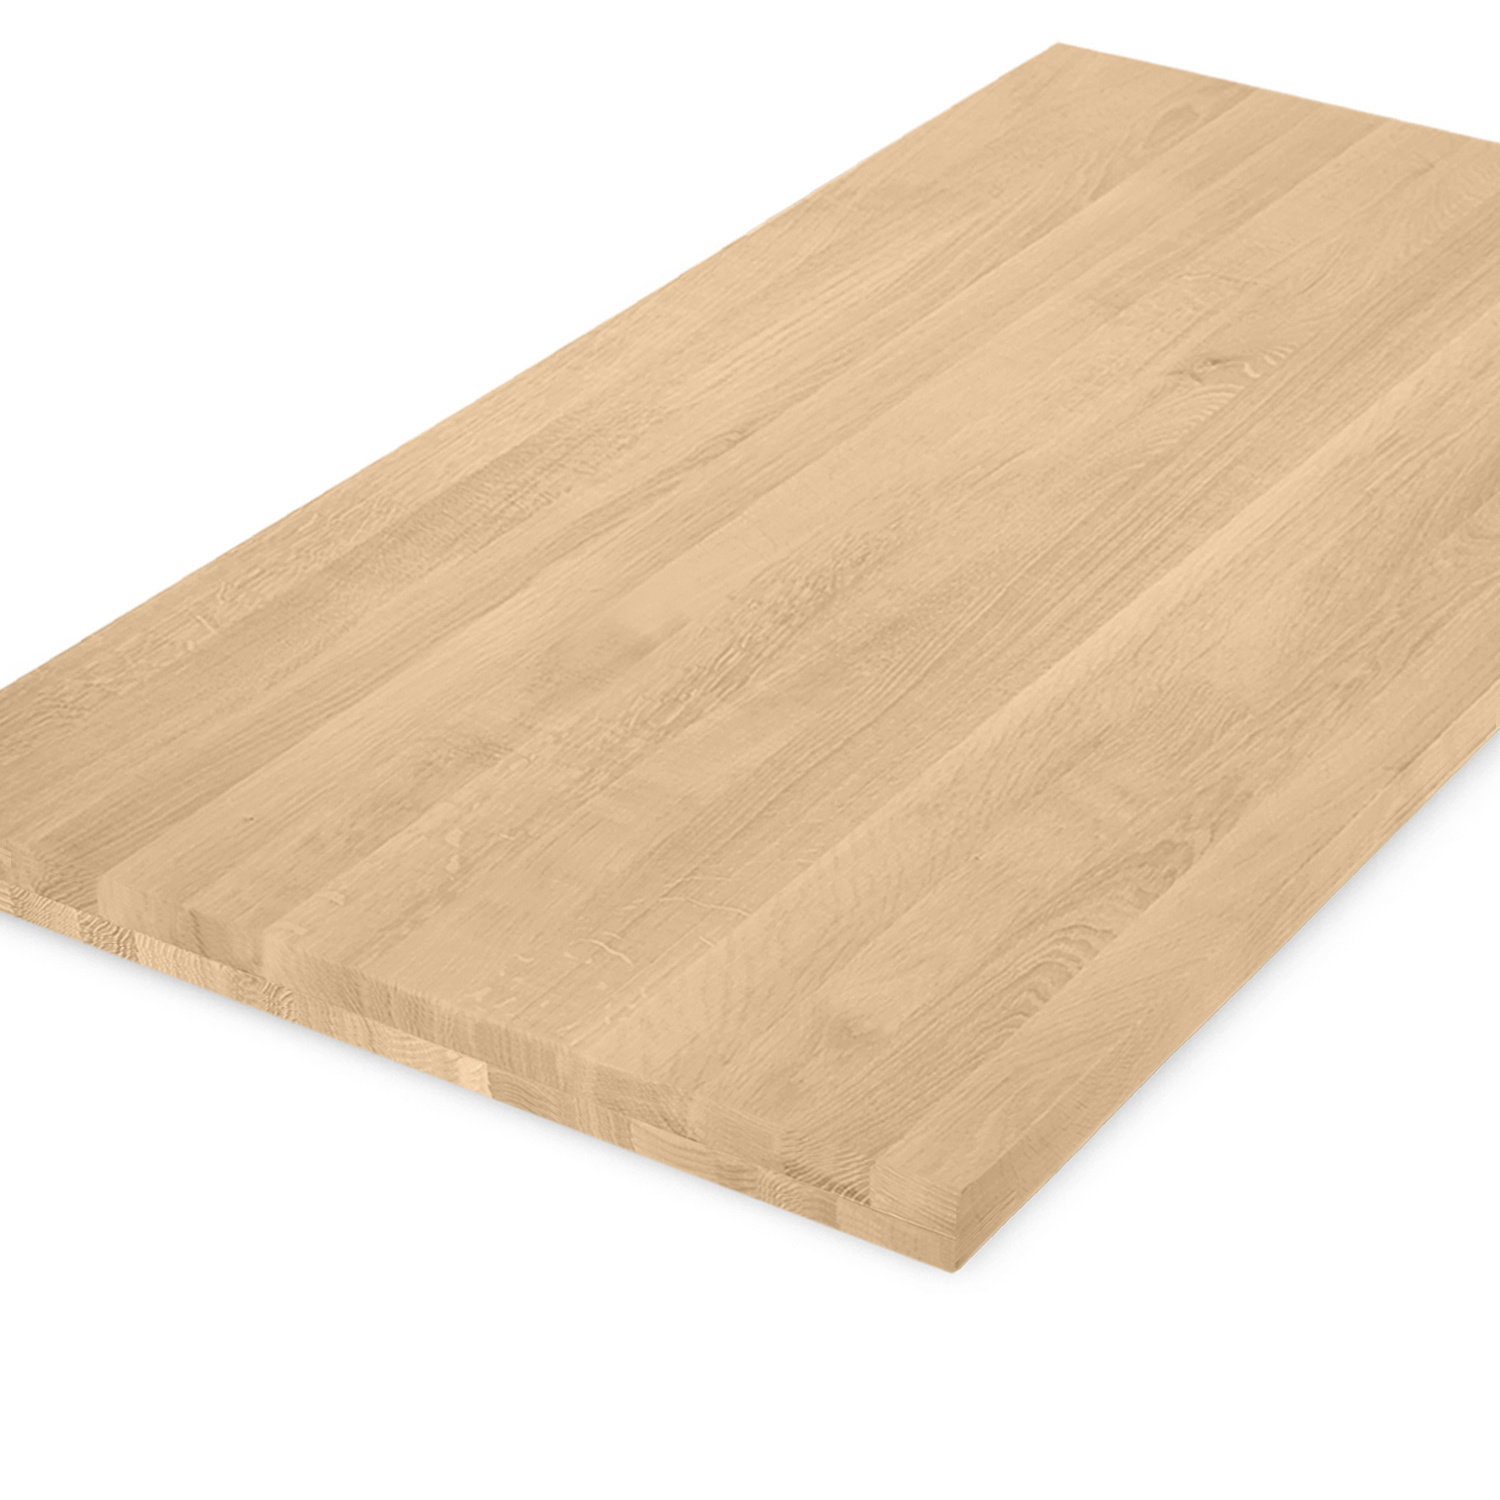  Tischplatte Eiche nach Maß - 4,6 cm dick (2-lagig) - Eichenholz A-Qualität - Eiche Tischplatte massiv - verleimt & künstlich getrocknet (HF 8-12%) - 50-120x50-260 cm